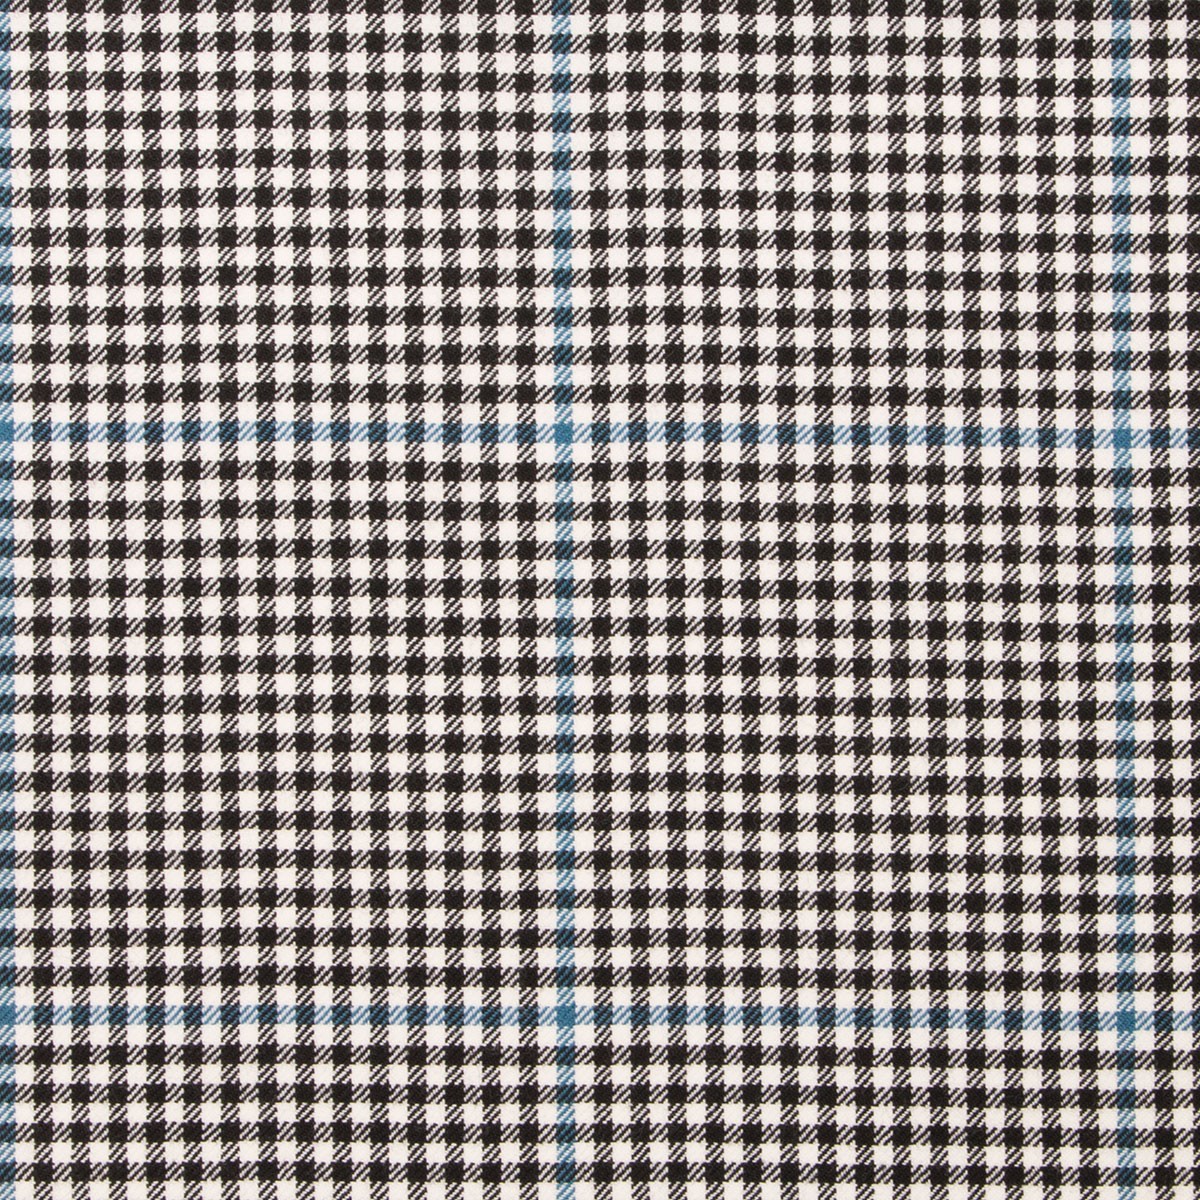 Buccleuch Tartan Fabric - Click Image to Close